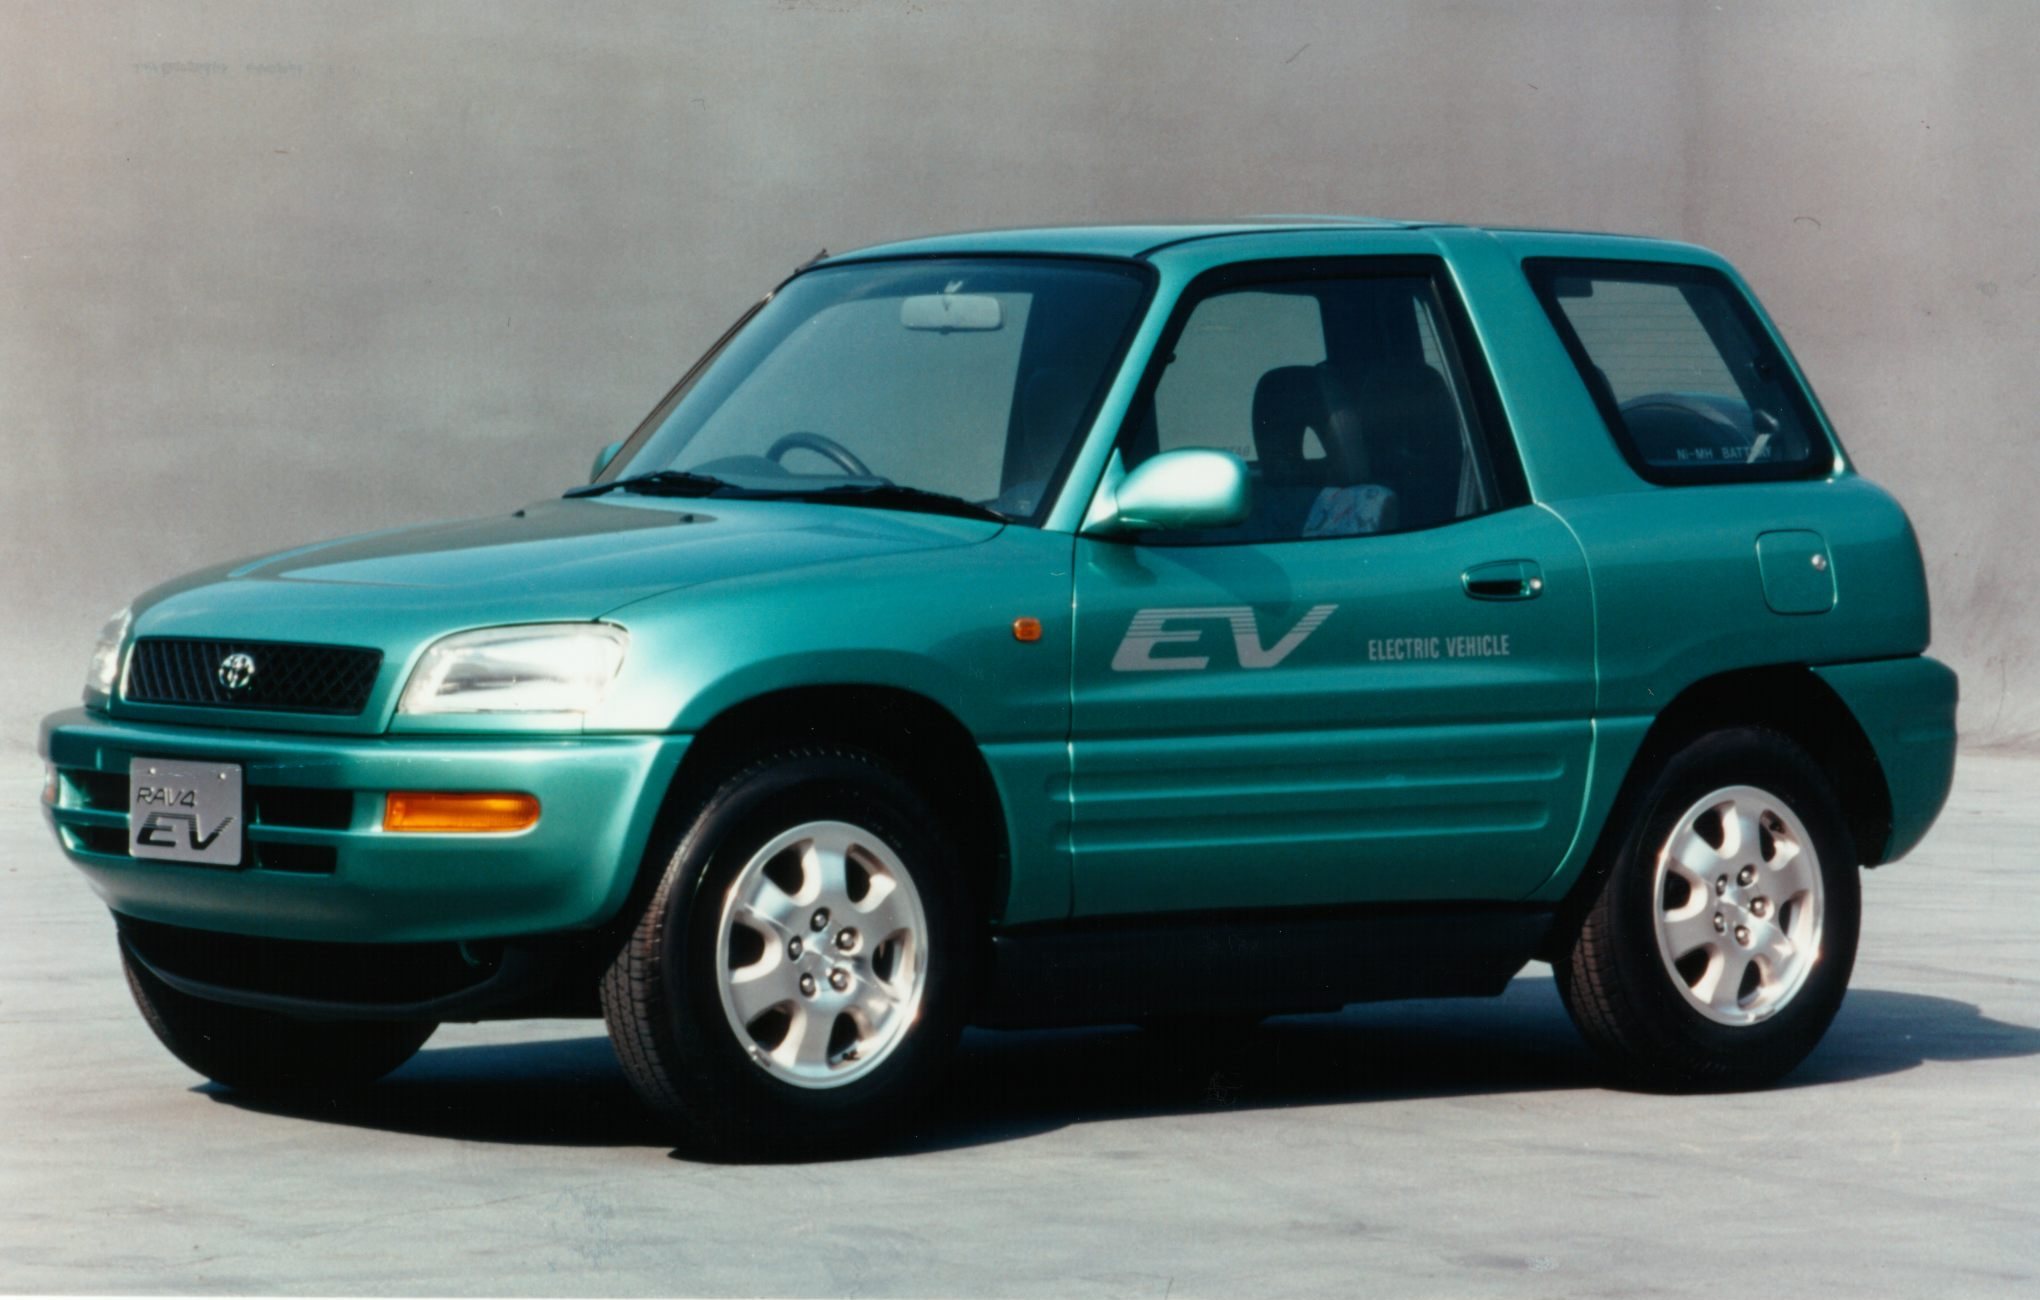 RAV4 EV (1996) Toyota Media Site